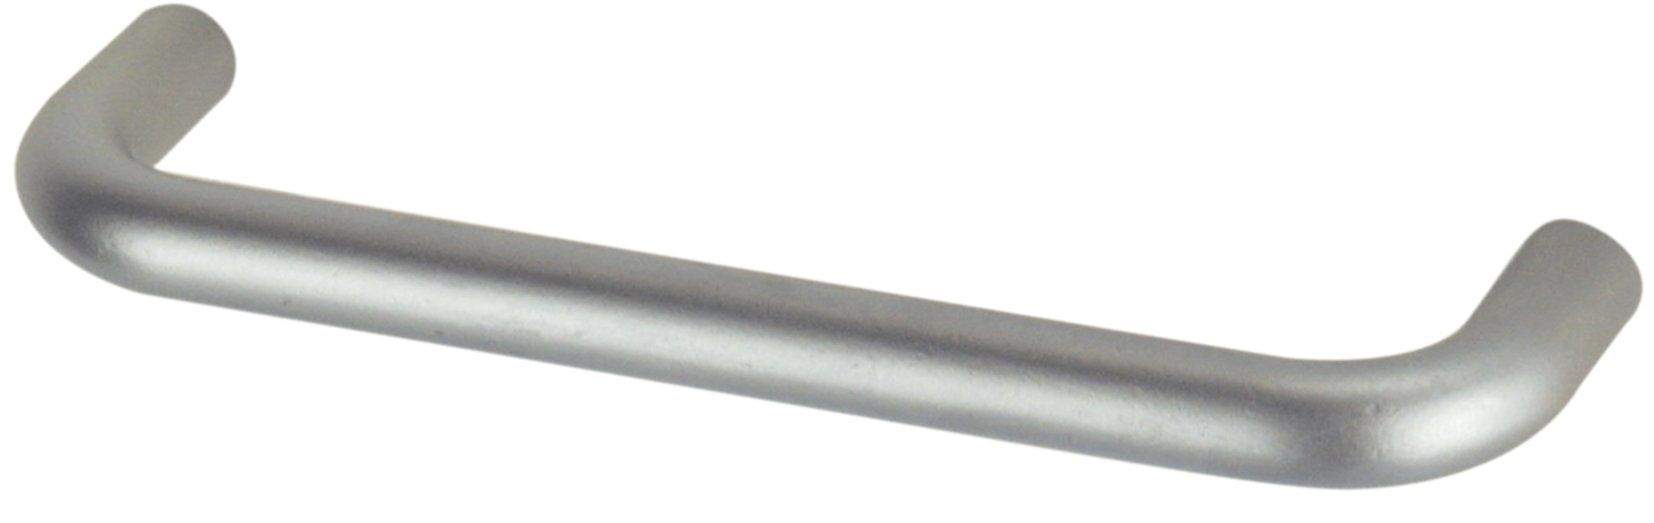 Poignée à fil avec insert acier chromé, L.136mm, D.8mm, P.28mm, entraxe 128mm, 1 pièce avec visserie.